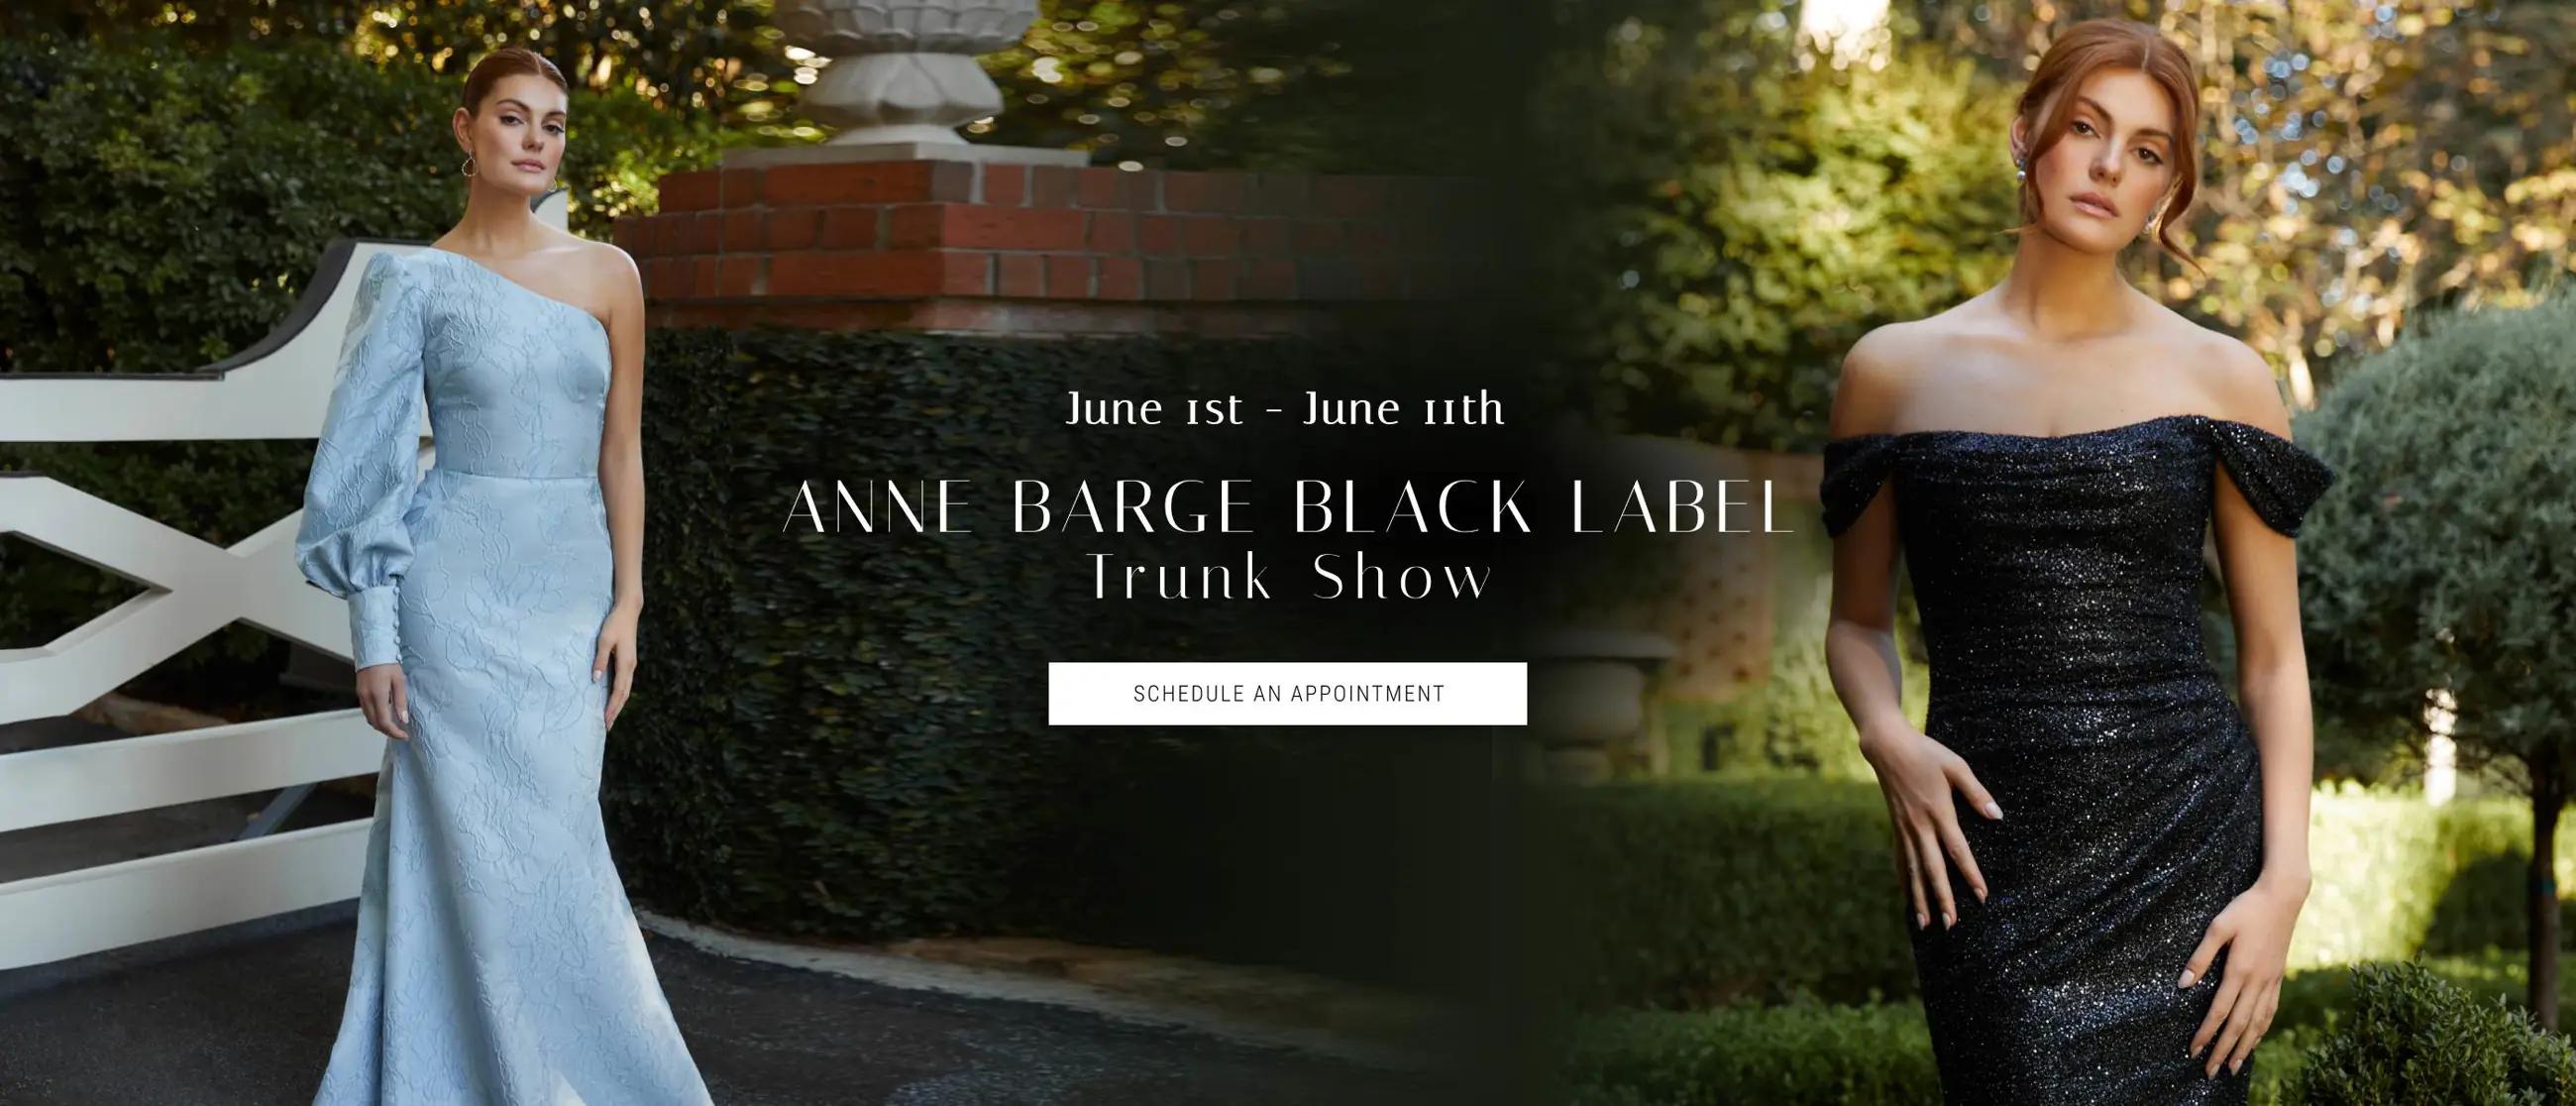 Black Label by Anne Barge Trunk Show Banner for desktop